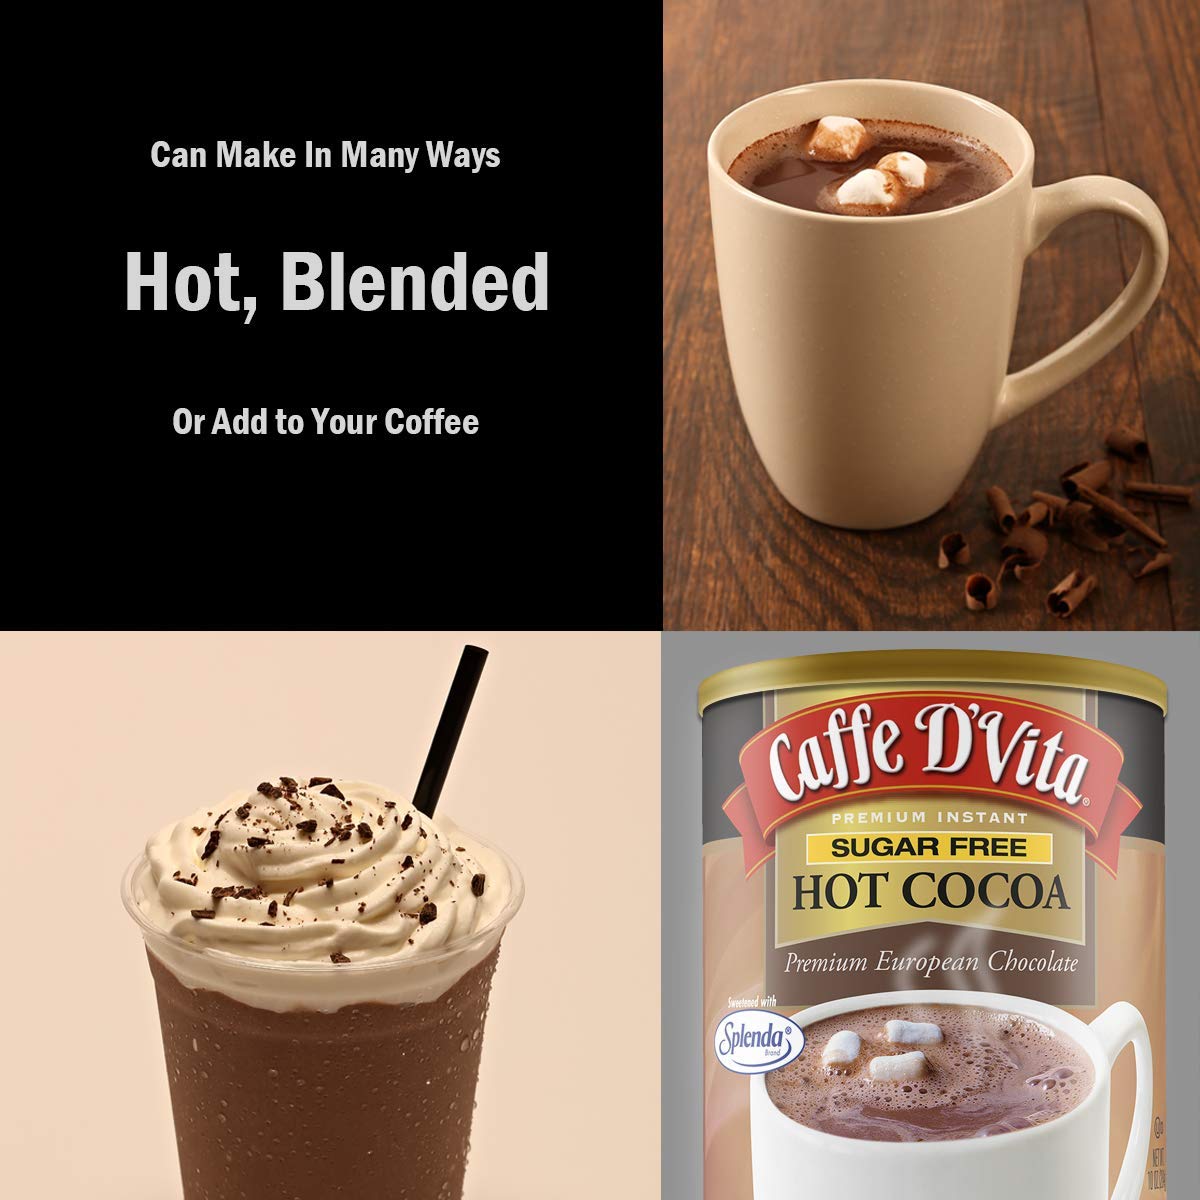 Caffe D’Vita Sugar Free Hot Cocoa 10 oz. can